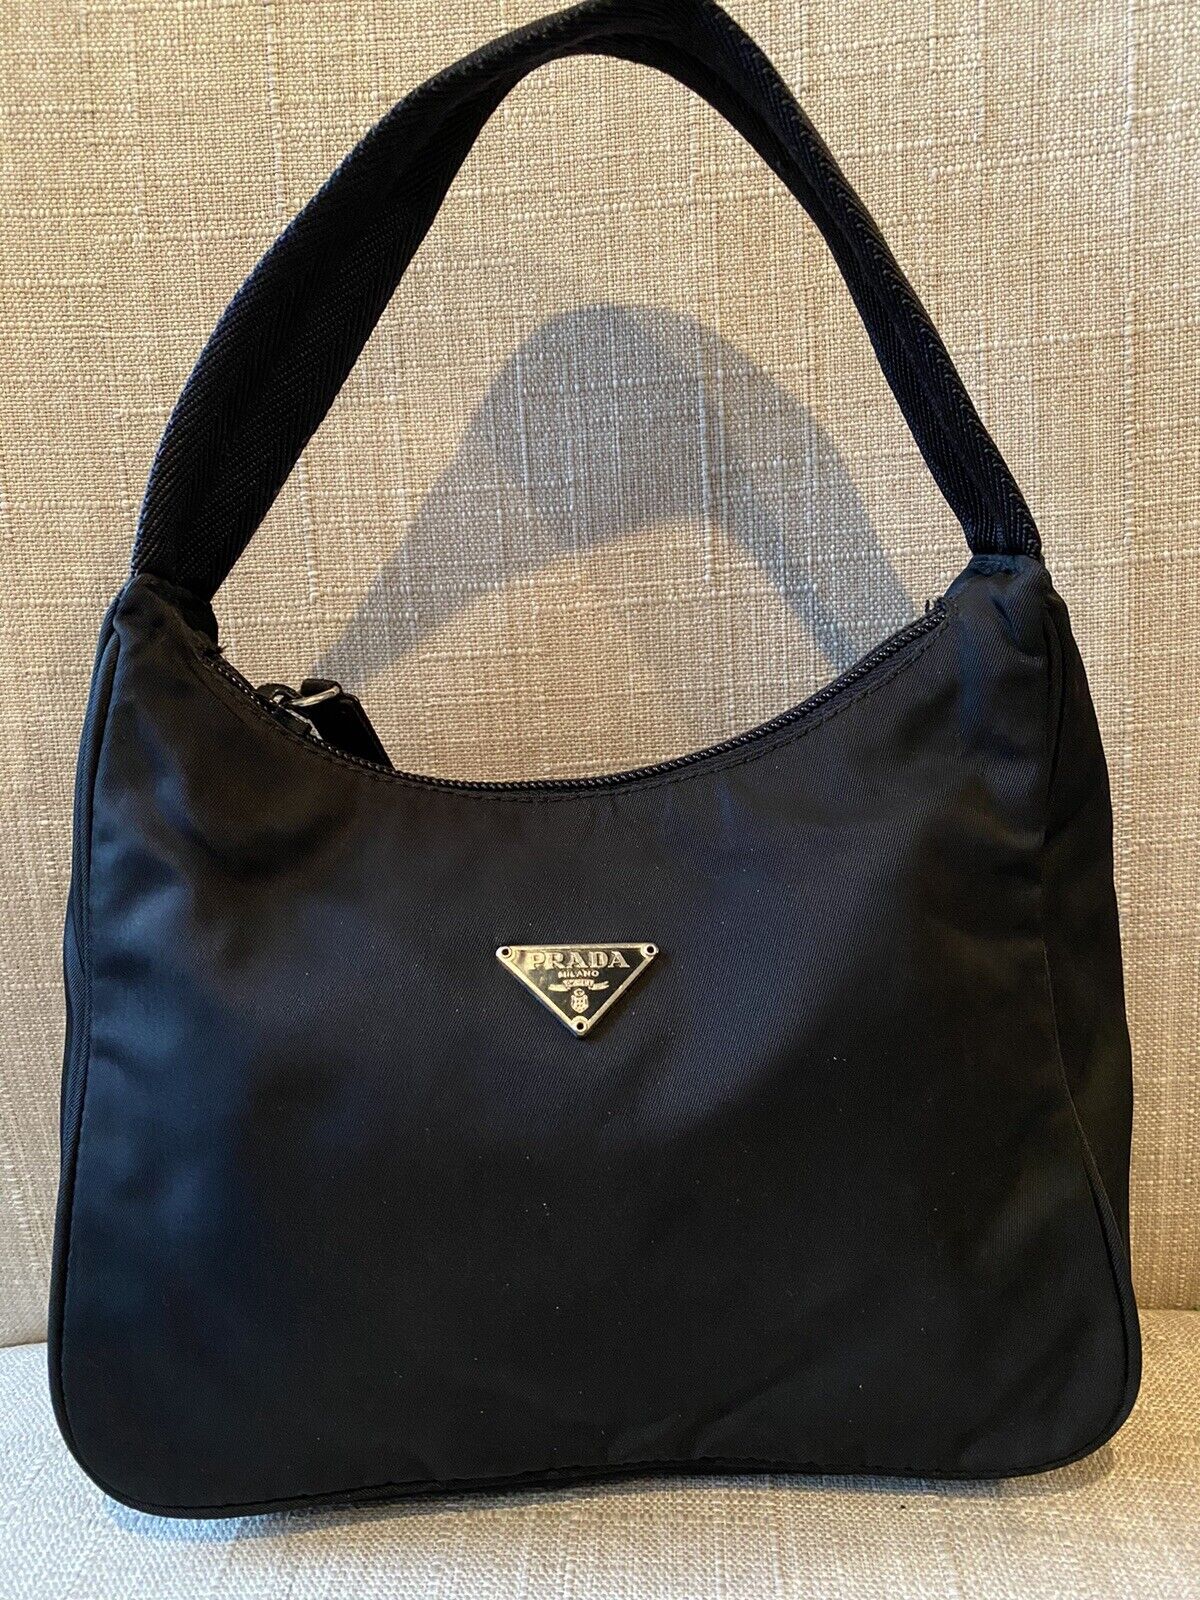 Prada Bag, Nylon Mini Hobo Bag in Black, Vintage